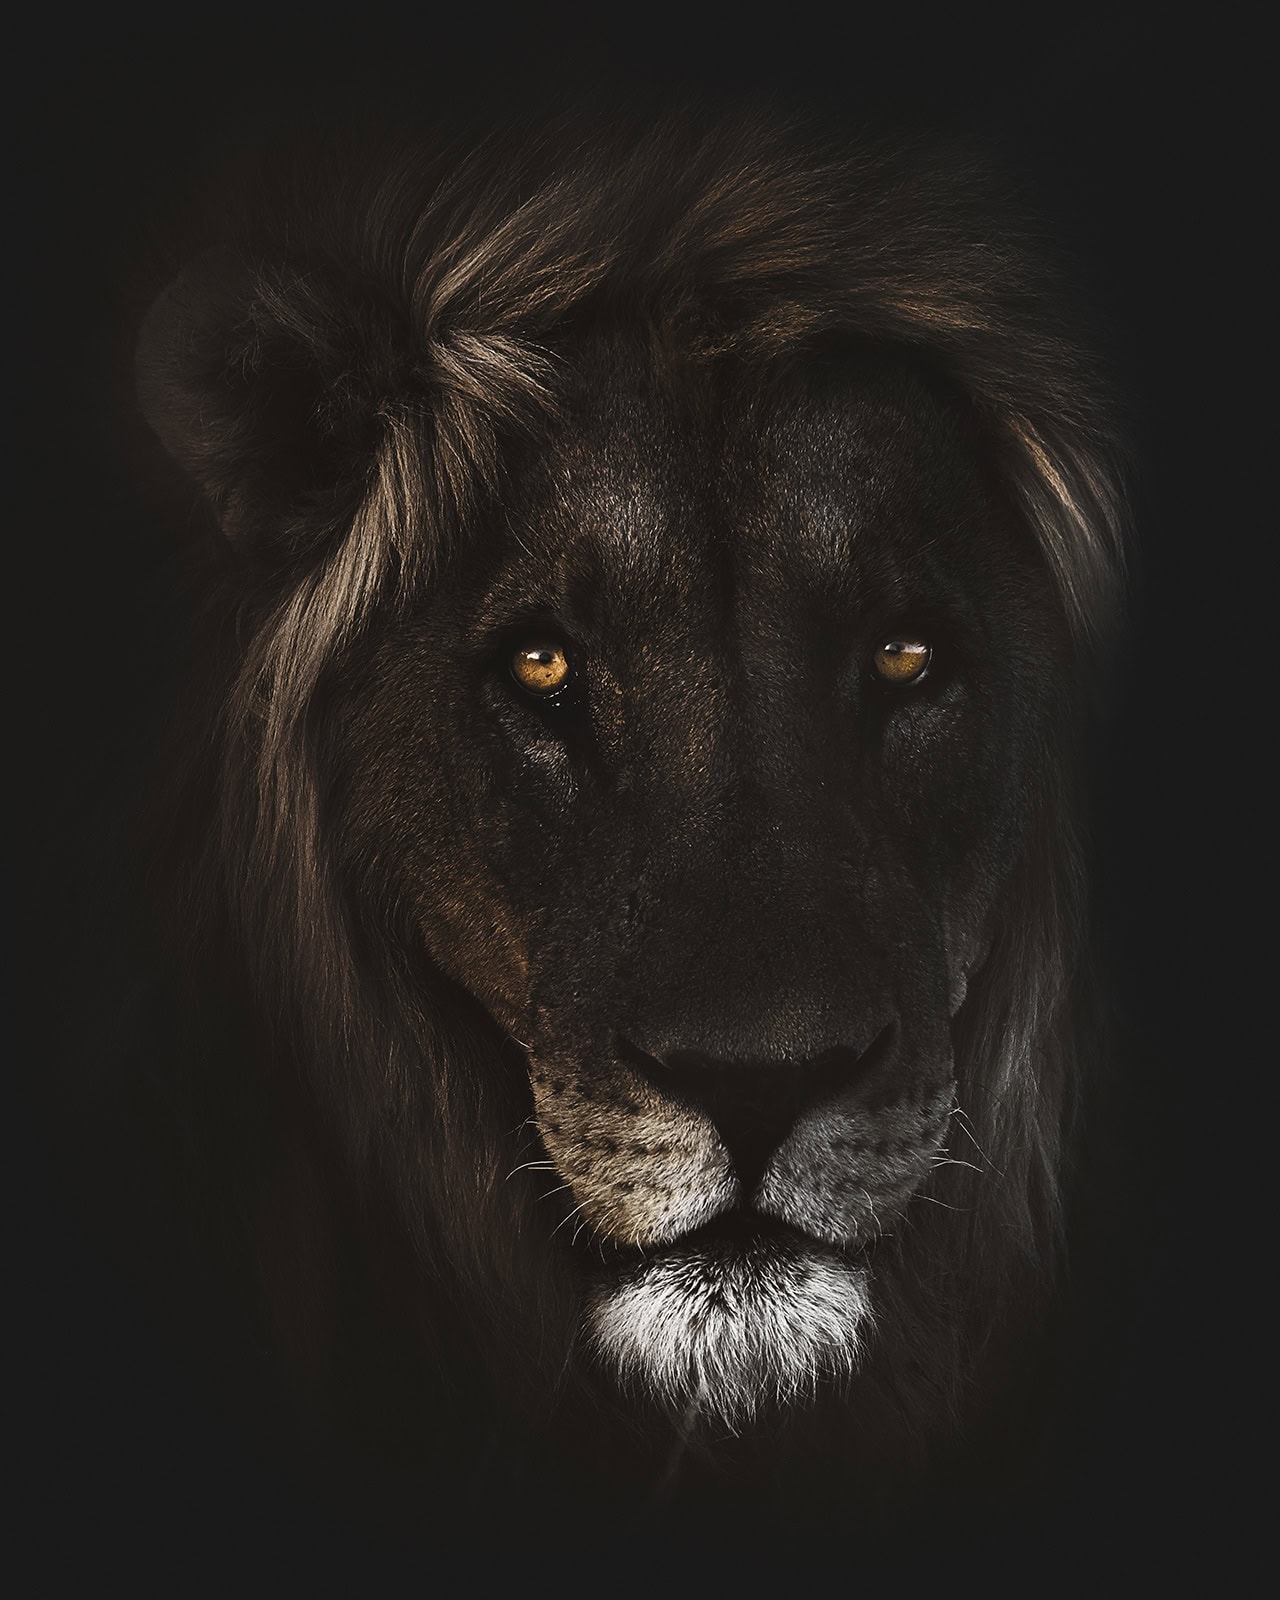 "Hannibal" Kopf eines Löwe mit Imposanter Mähne der aus der Dunkelheit kommt